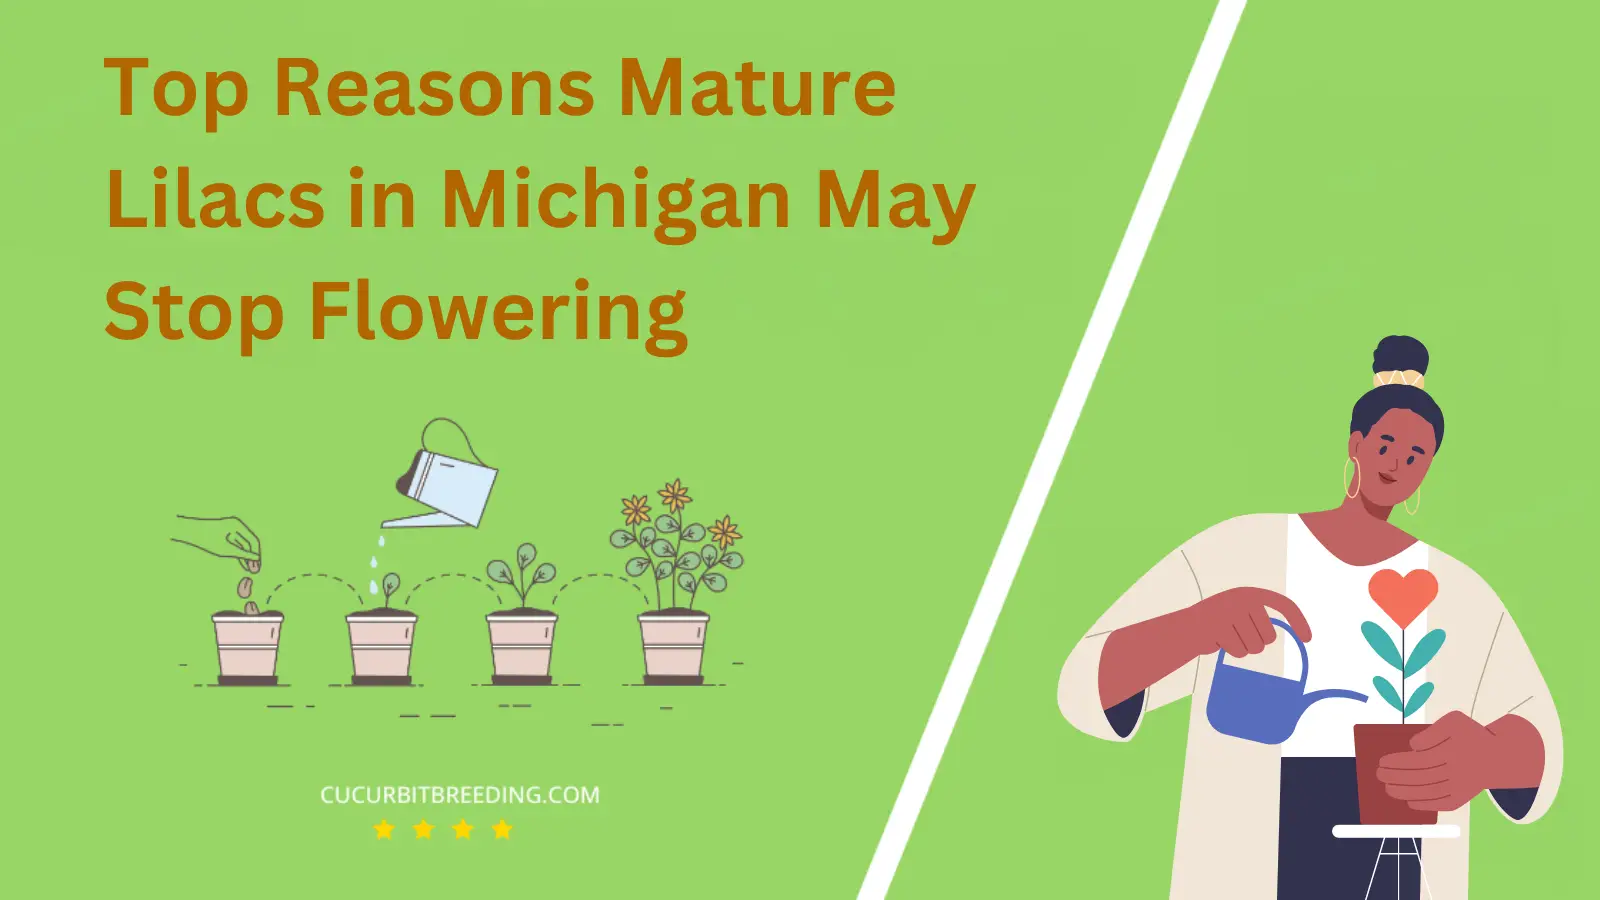 Top Reasons Mature Lilacs in Michigan May Stop Flowering